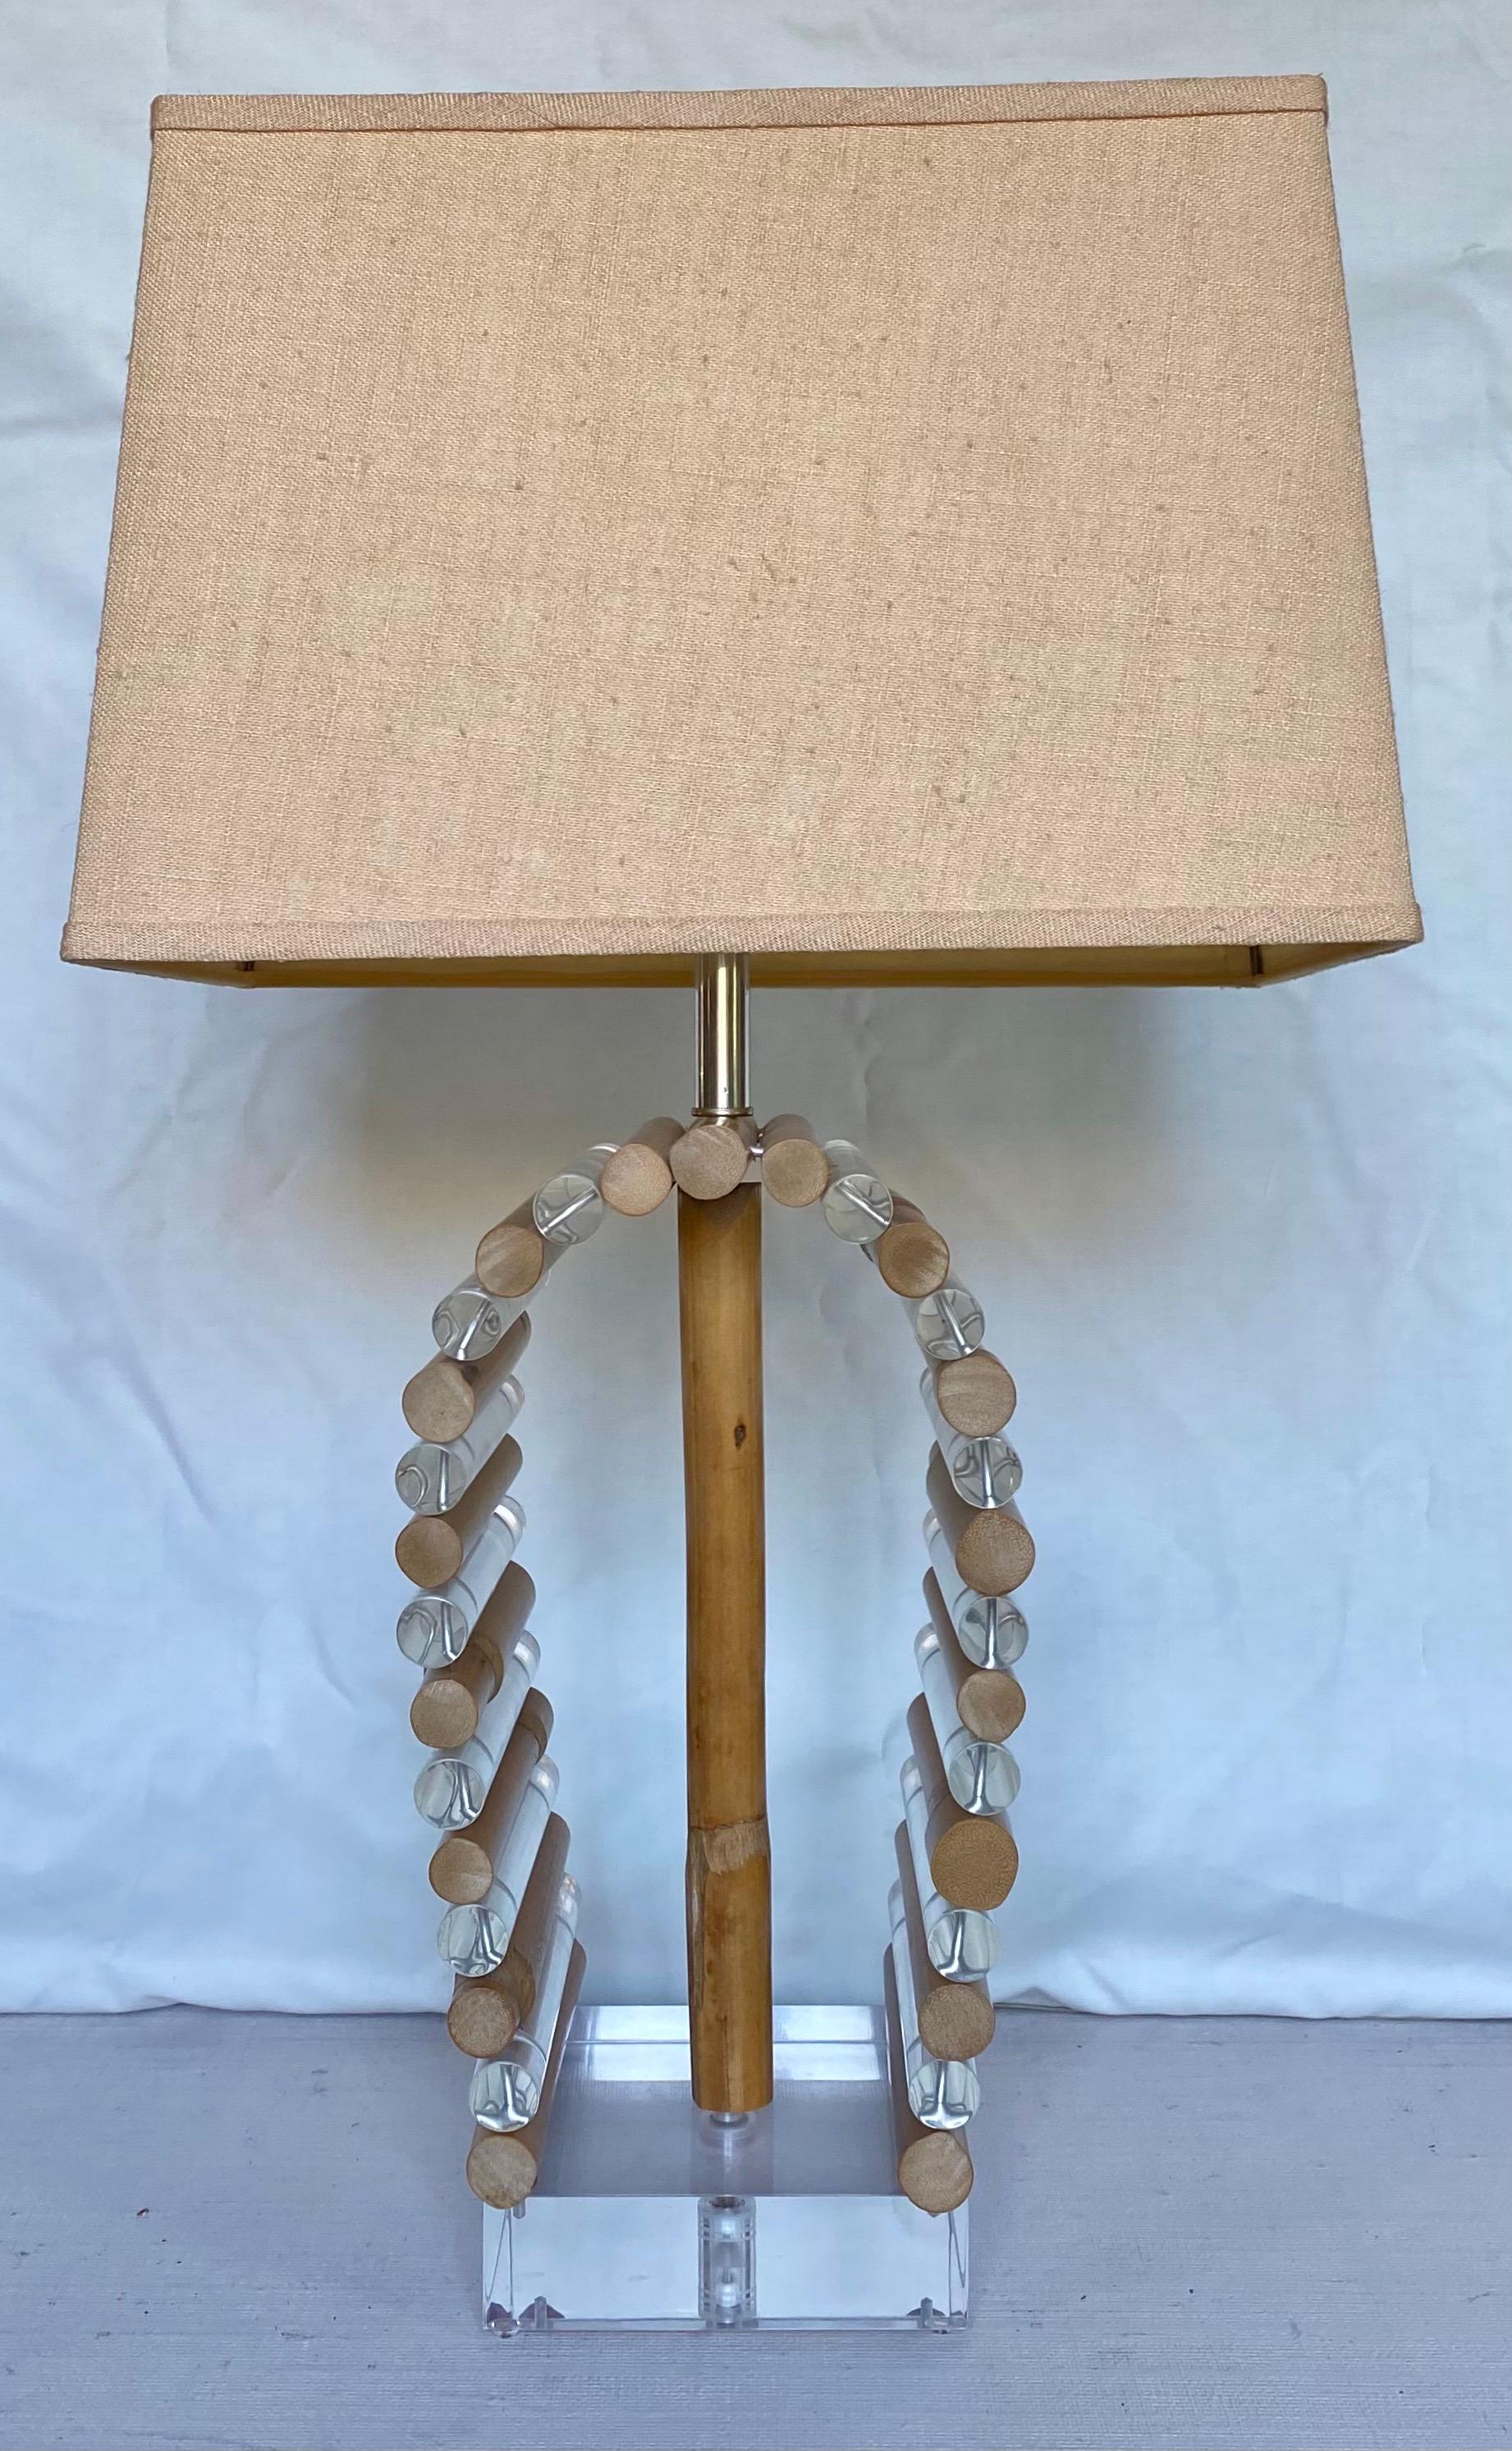 Lampe de table en Lucite et roseau de bambou de style moderne du milieu du siècle dernier par Shirley Ritts pour Ritts Co. Los Angeles. Cette lampe sculpturale de style Palm Regency est composée de tiges tubulaires en Lucite transparent et en bambou